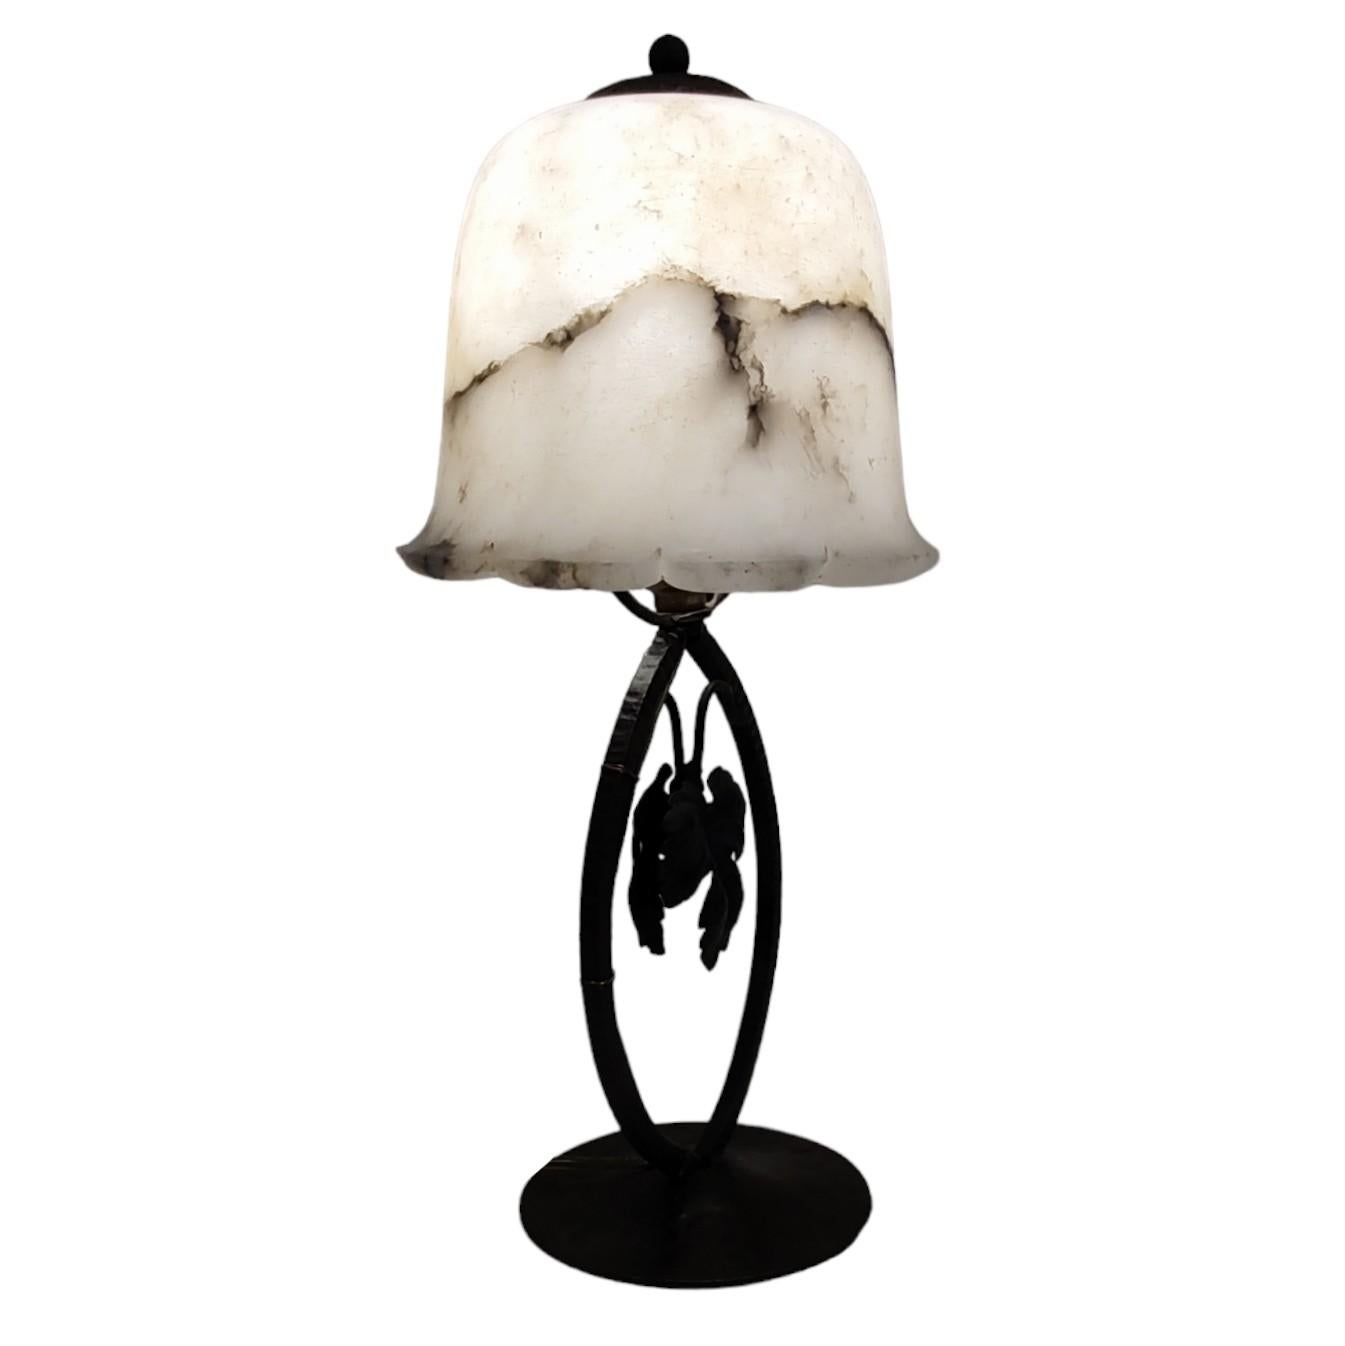 Lampe de table Art Déco - années 1930

Magnifique lampe de table Art Déco des années 1930. La lampe a une base en métal noir et un abat-jour en albâtre pressé. 

Cette lampe de table est un classique absolu du design de la période ART DECO.